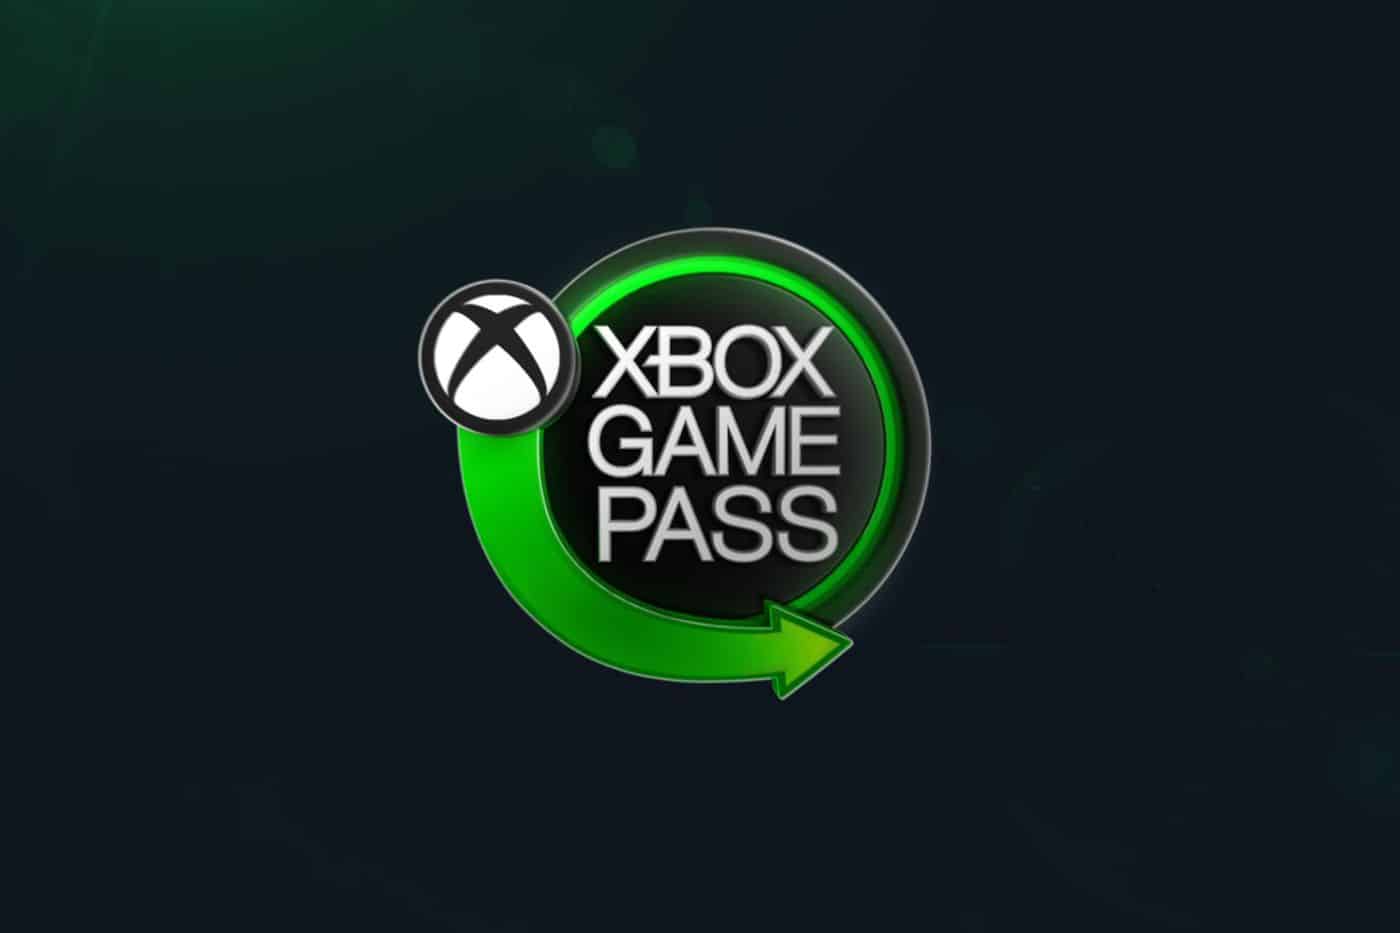 Analisamos os jogos do Xbox Game Pass do mês de novembro! 